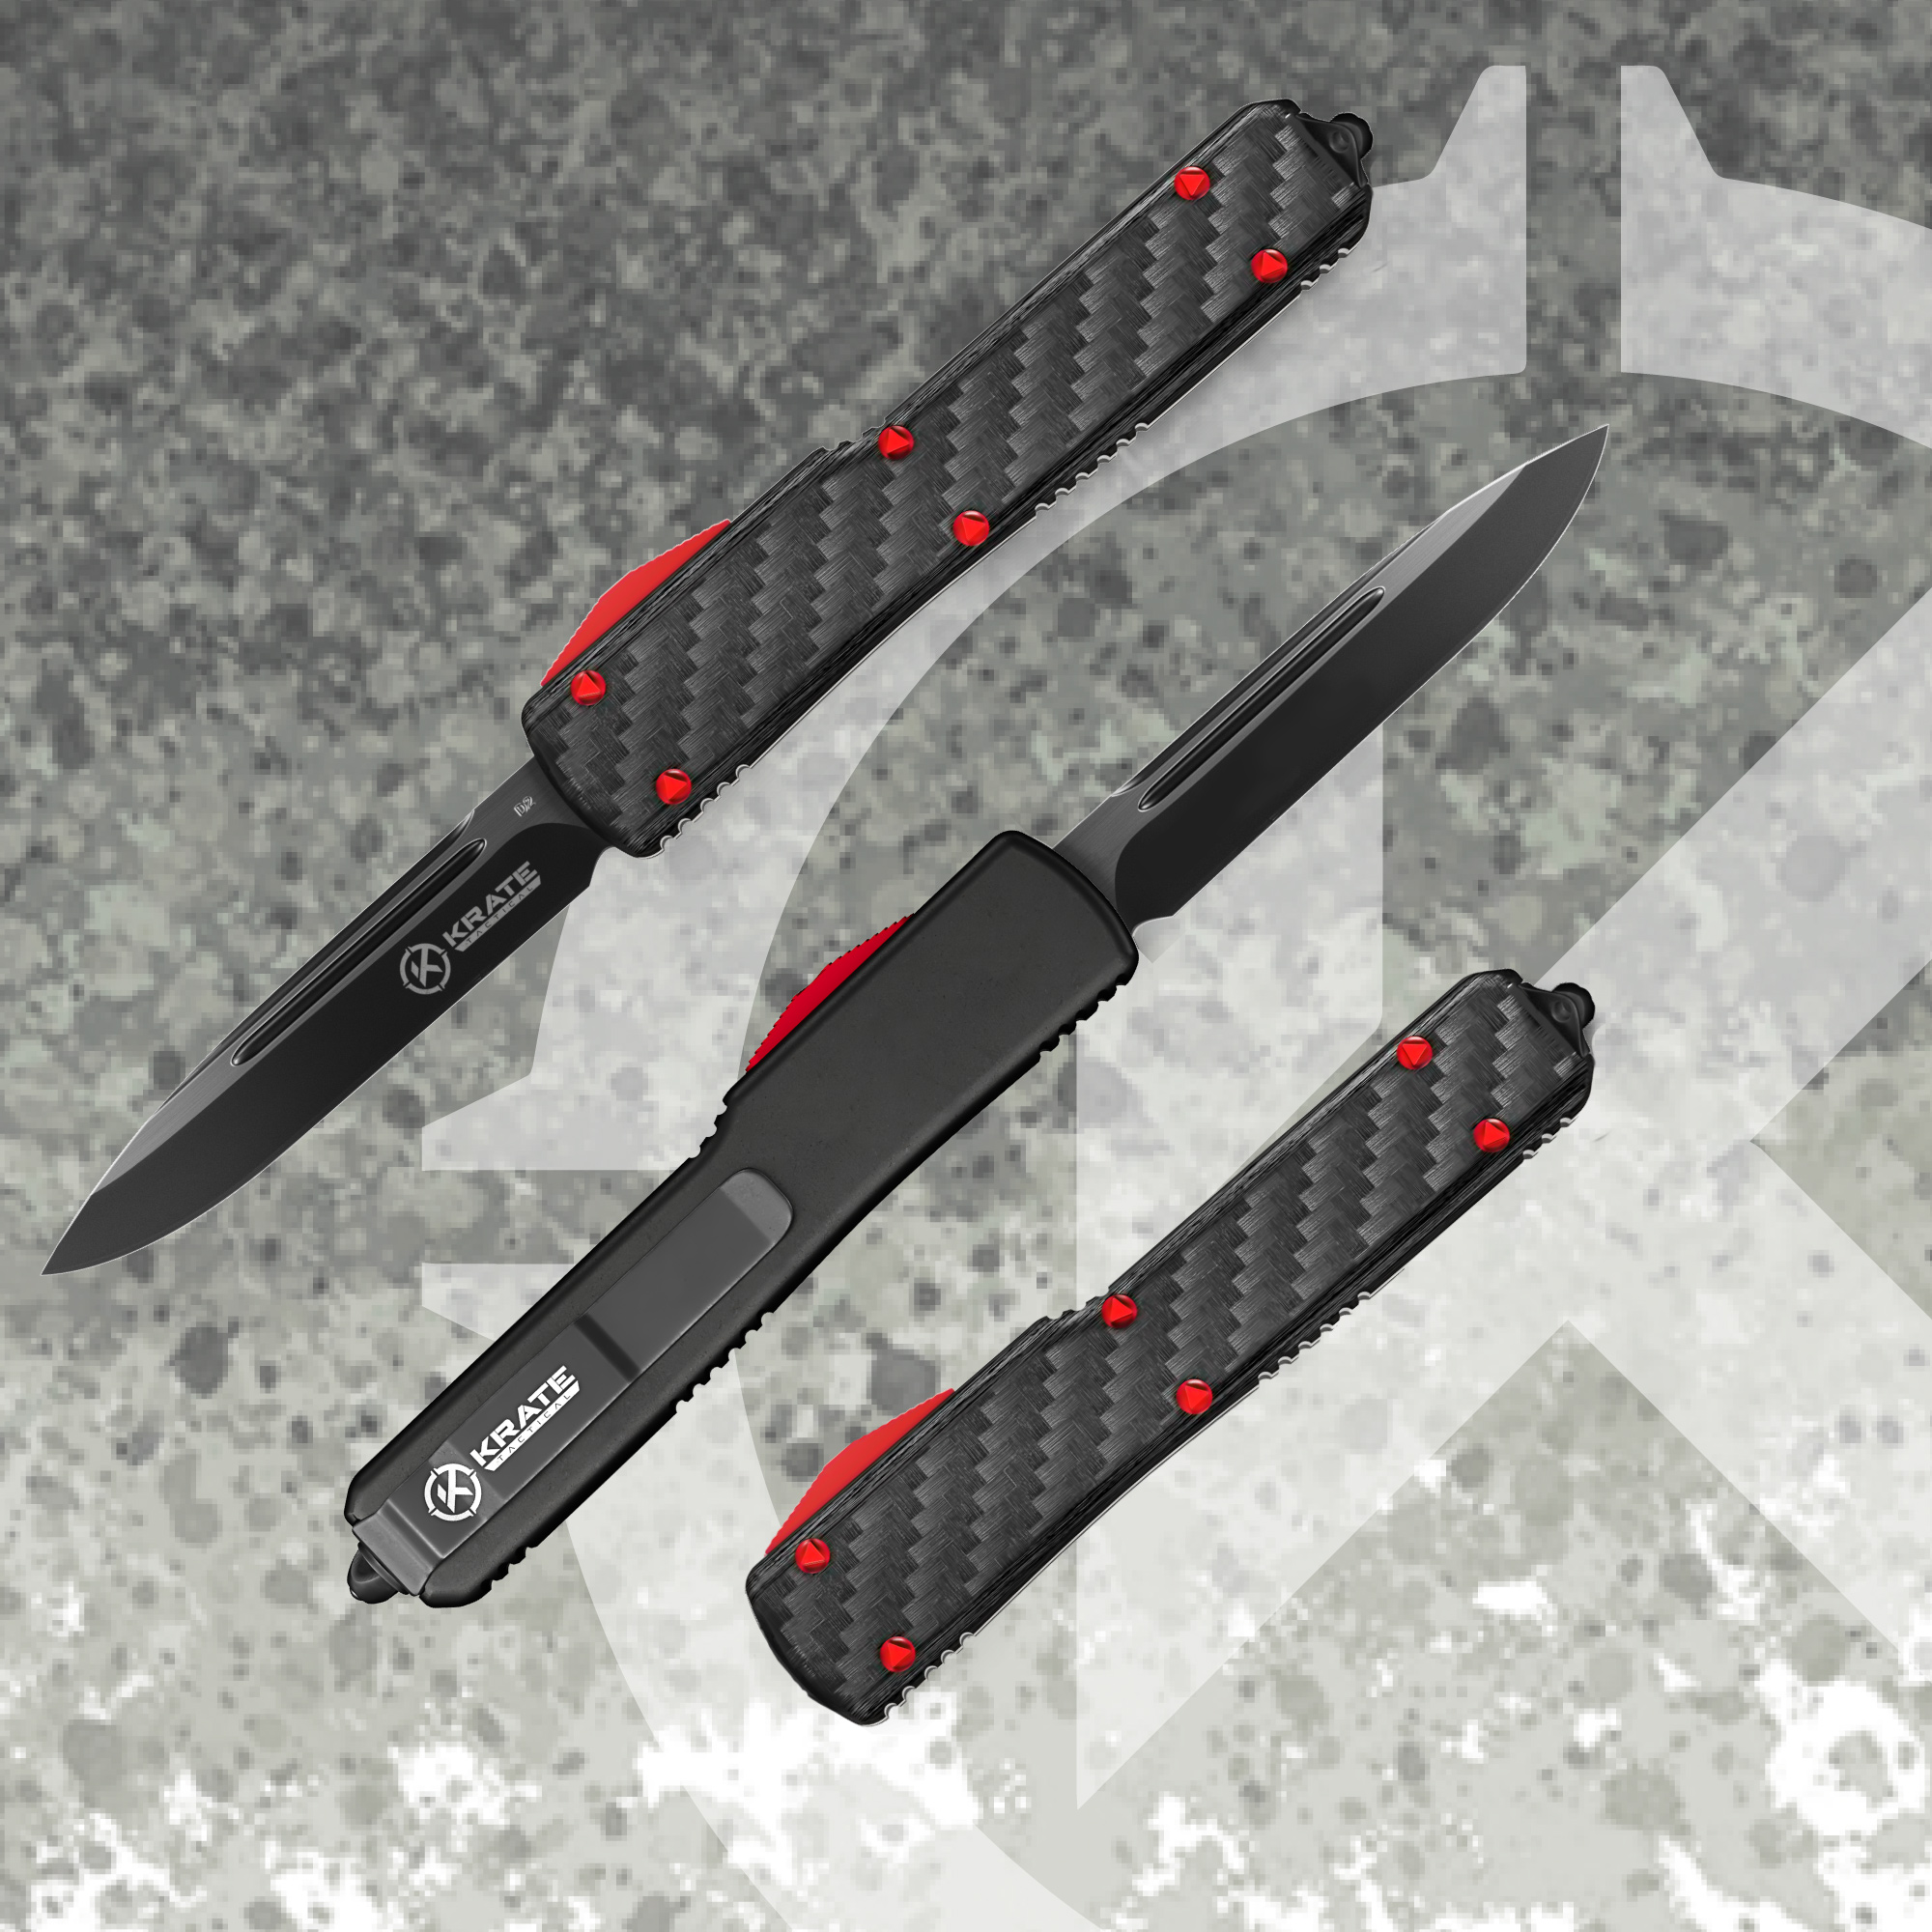  outROAR Gear Folding Scalpel Knife with Carbon Fiber